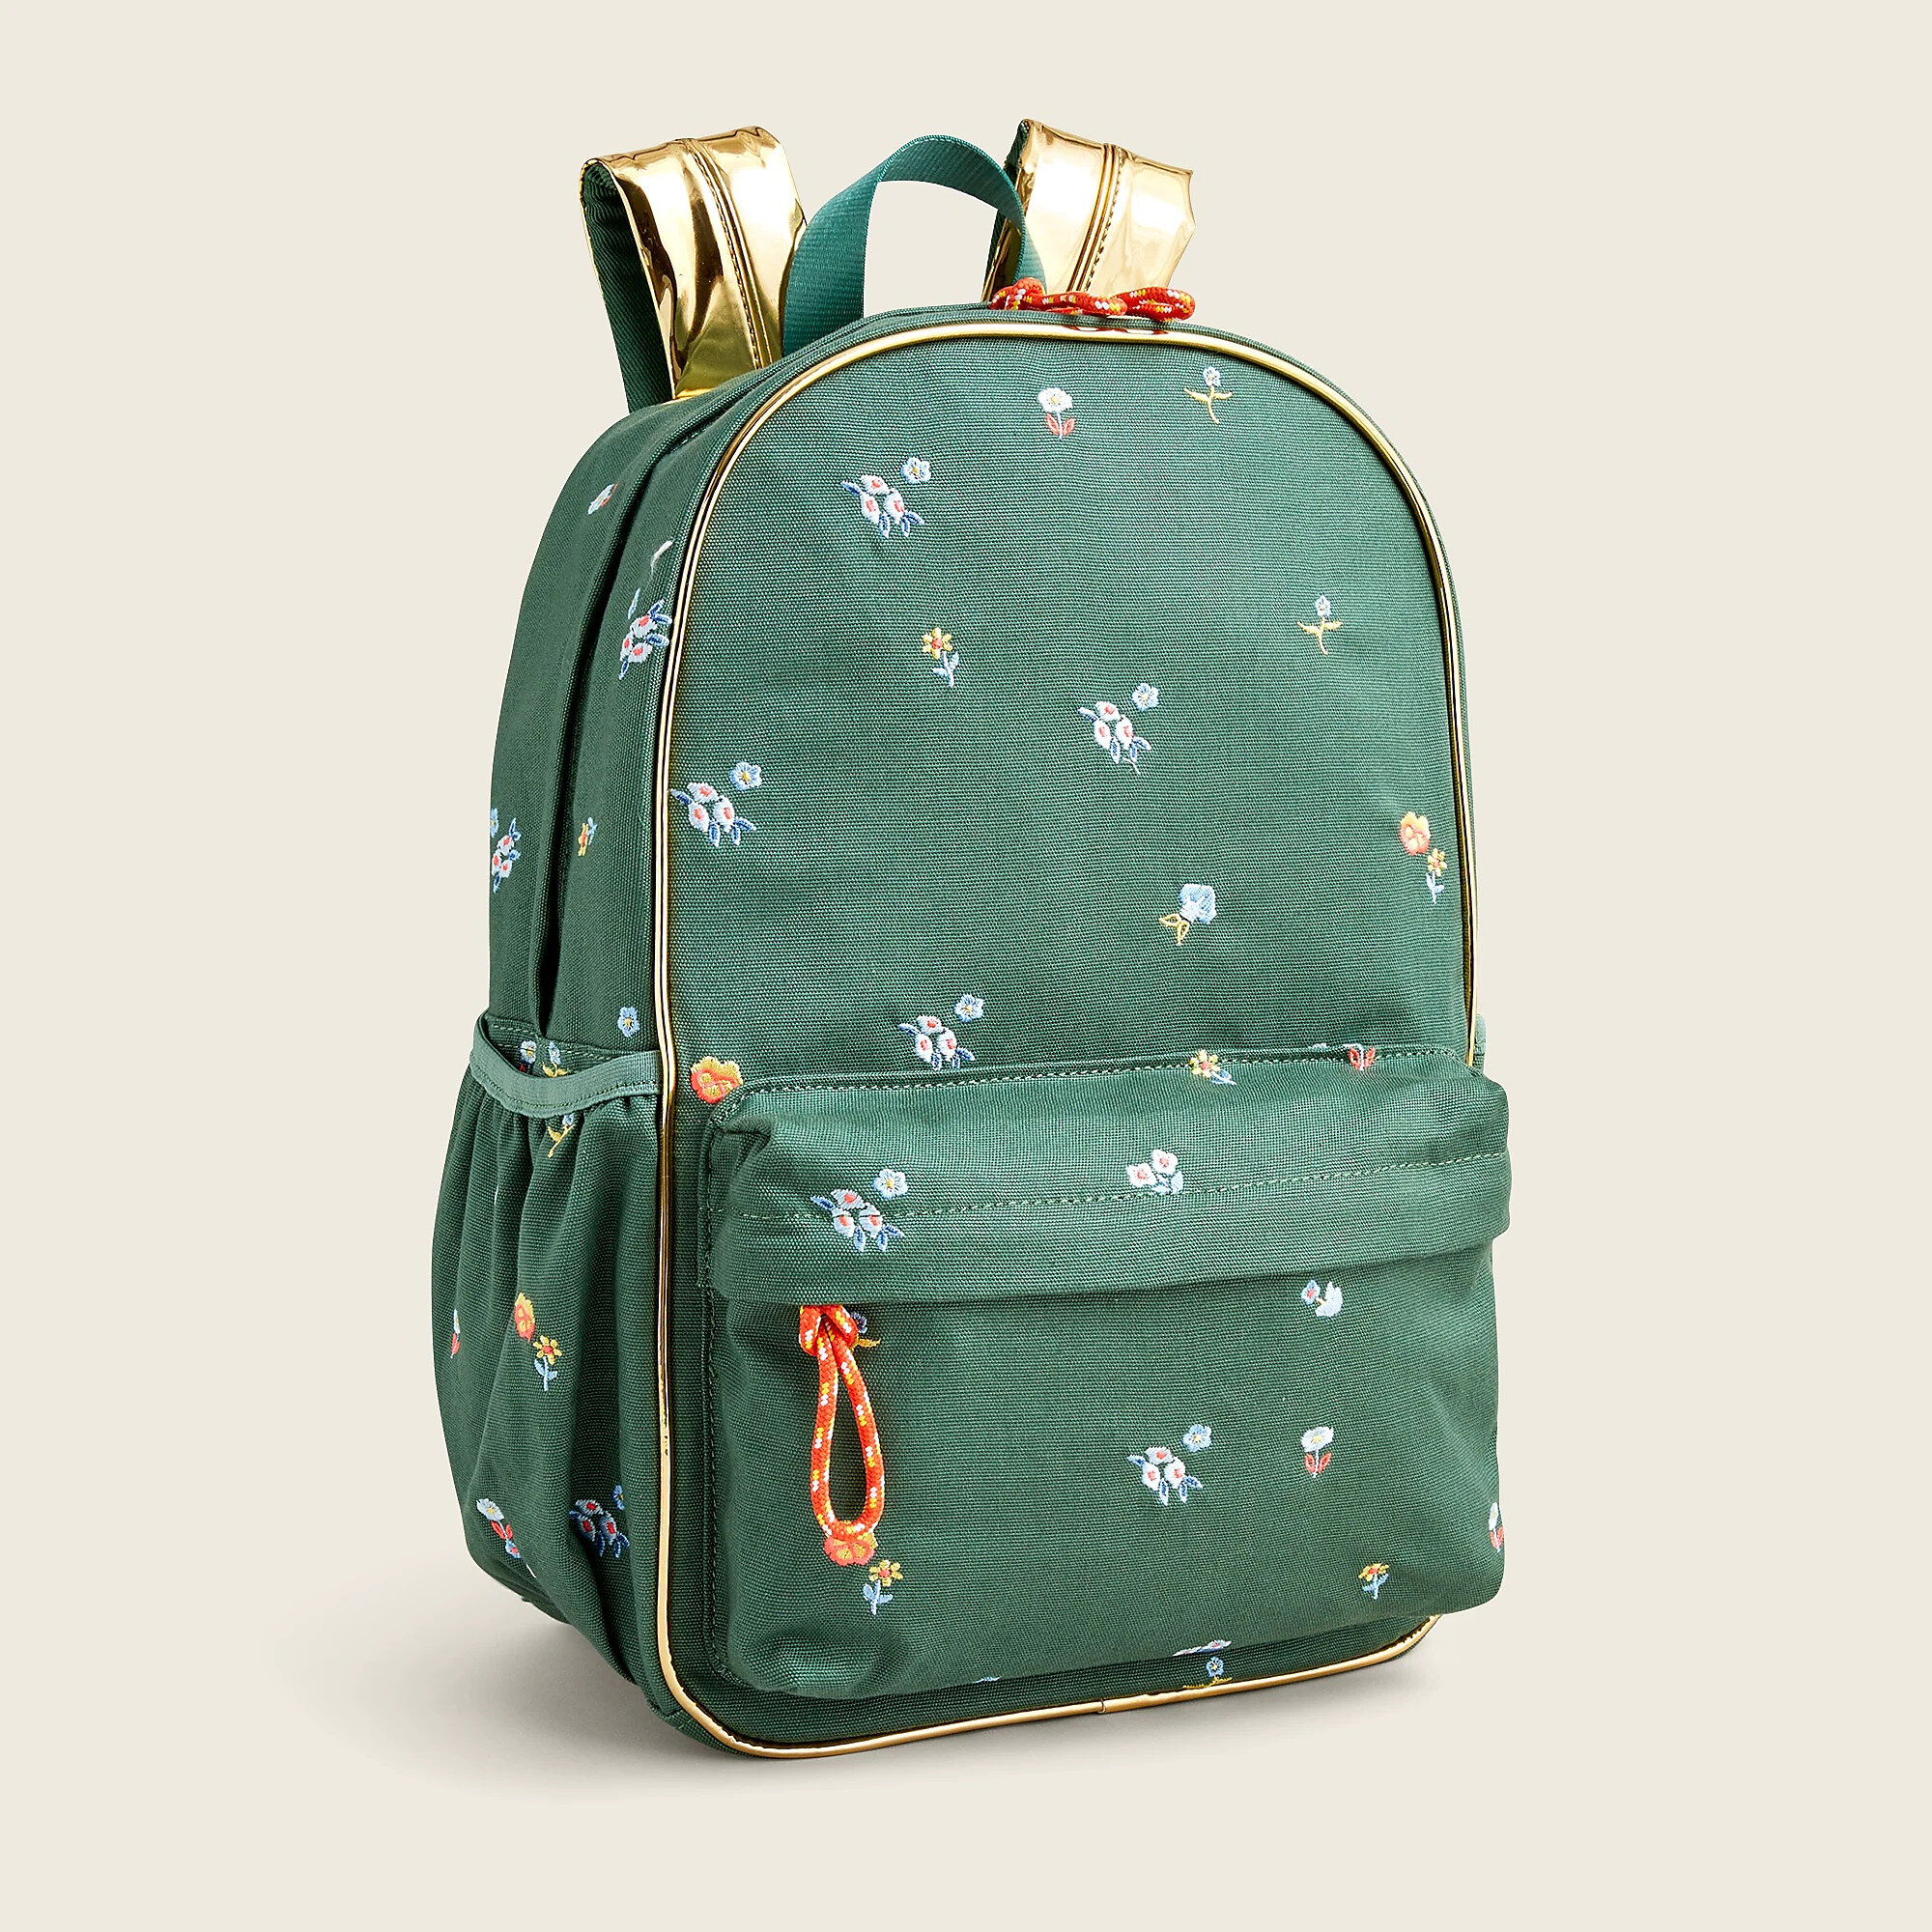 Kids' backpack in floral - J Crew.jpg